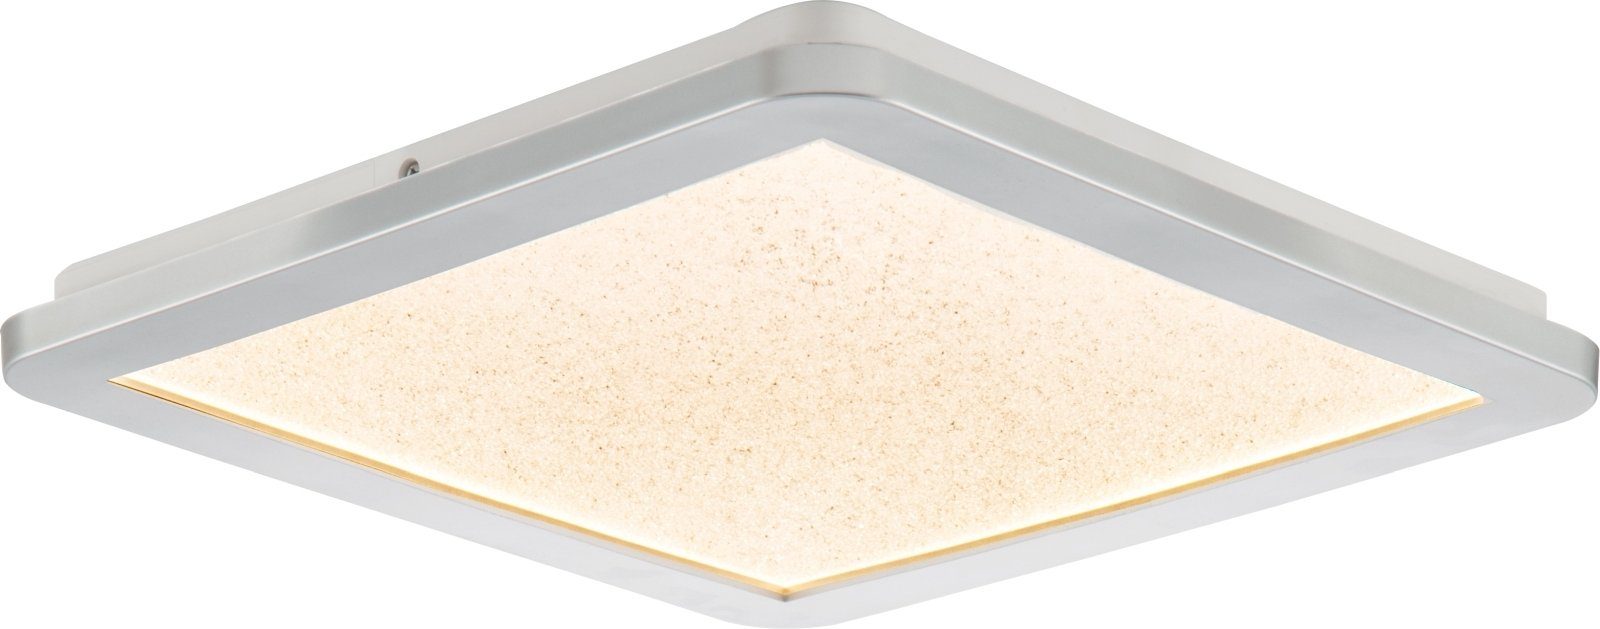 bmf-versand Deckenleuchte Panel Deckenlampe Deckenleuchte LED Nino Eckig Wohnzimmer Leuchten